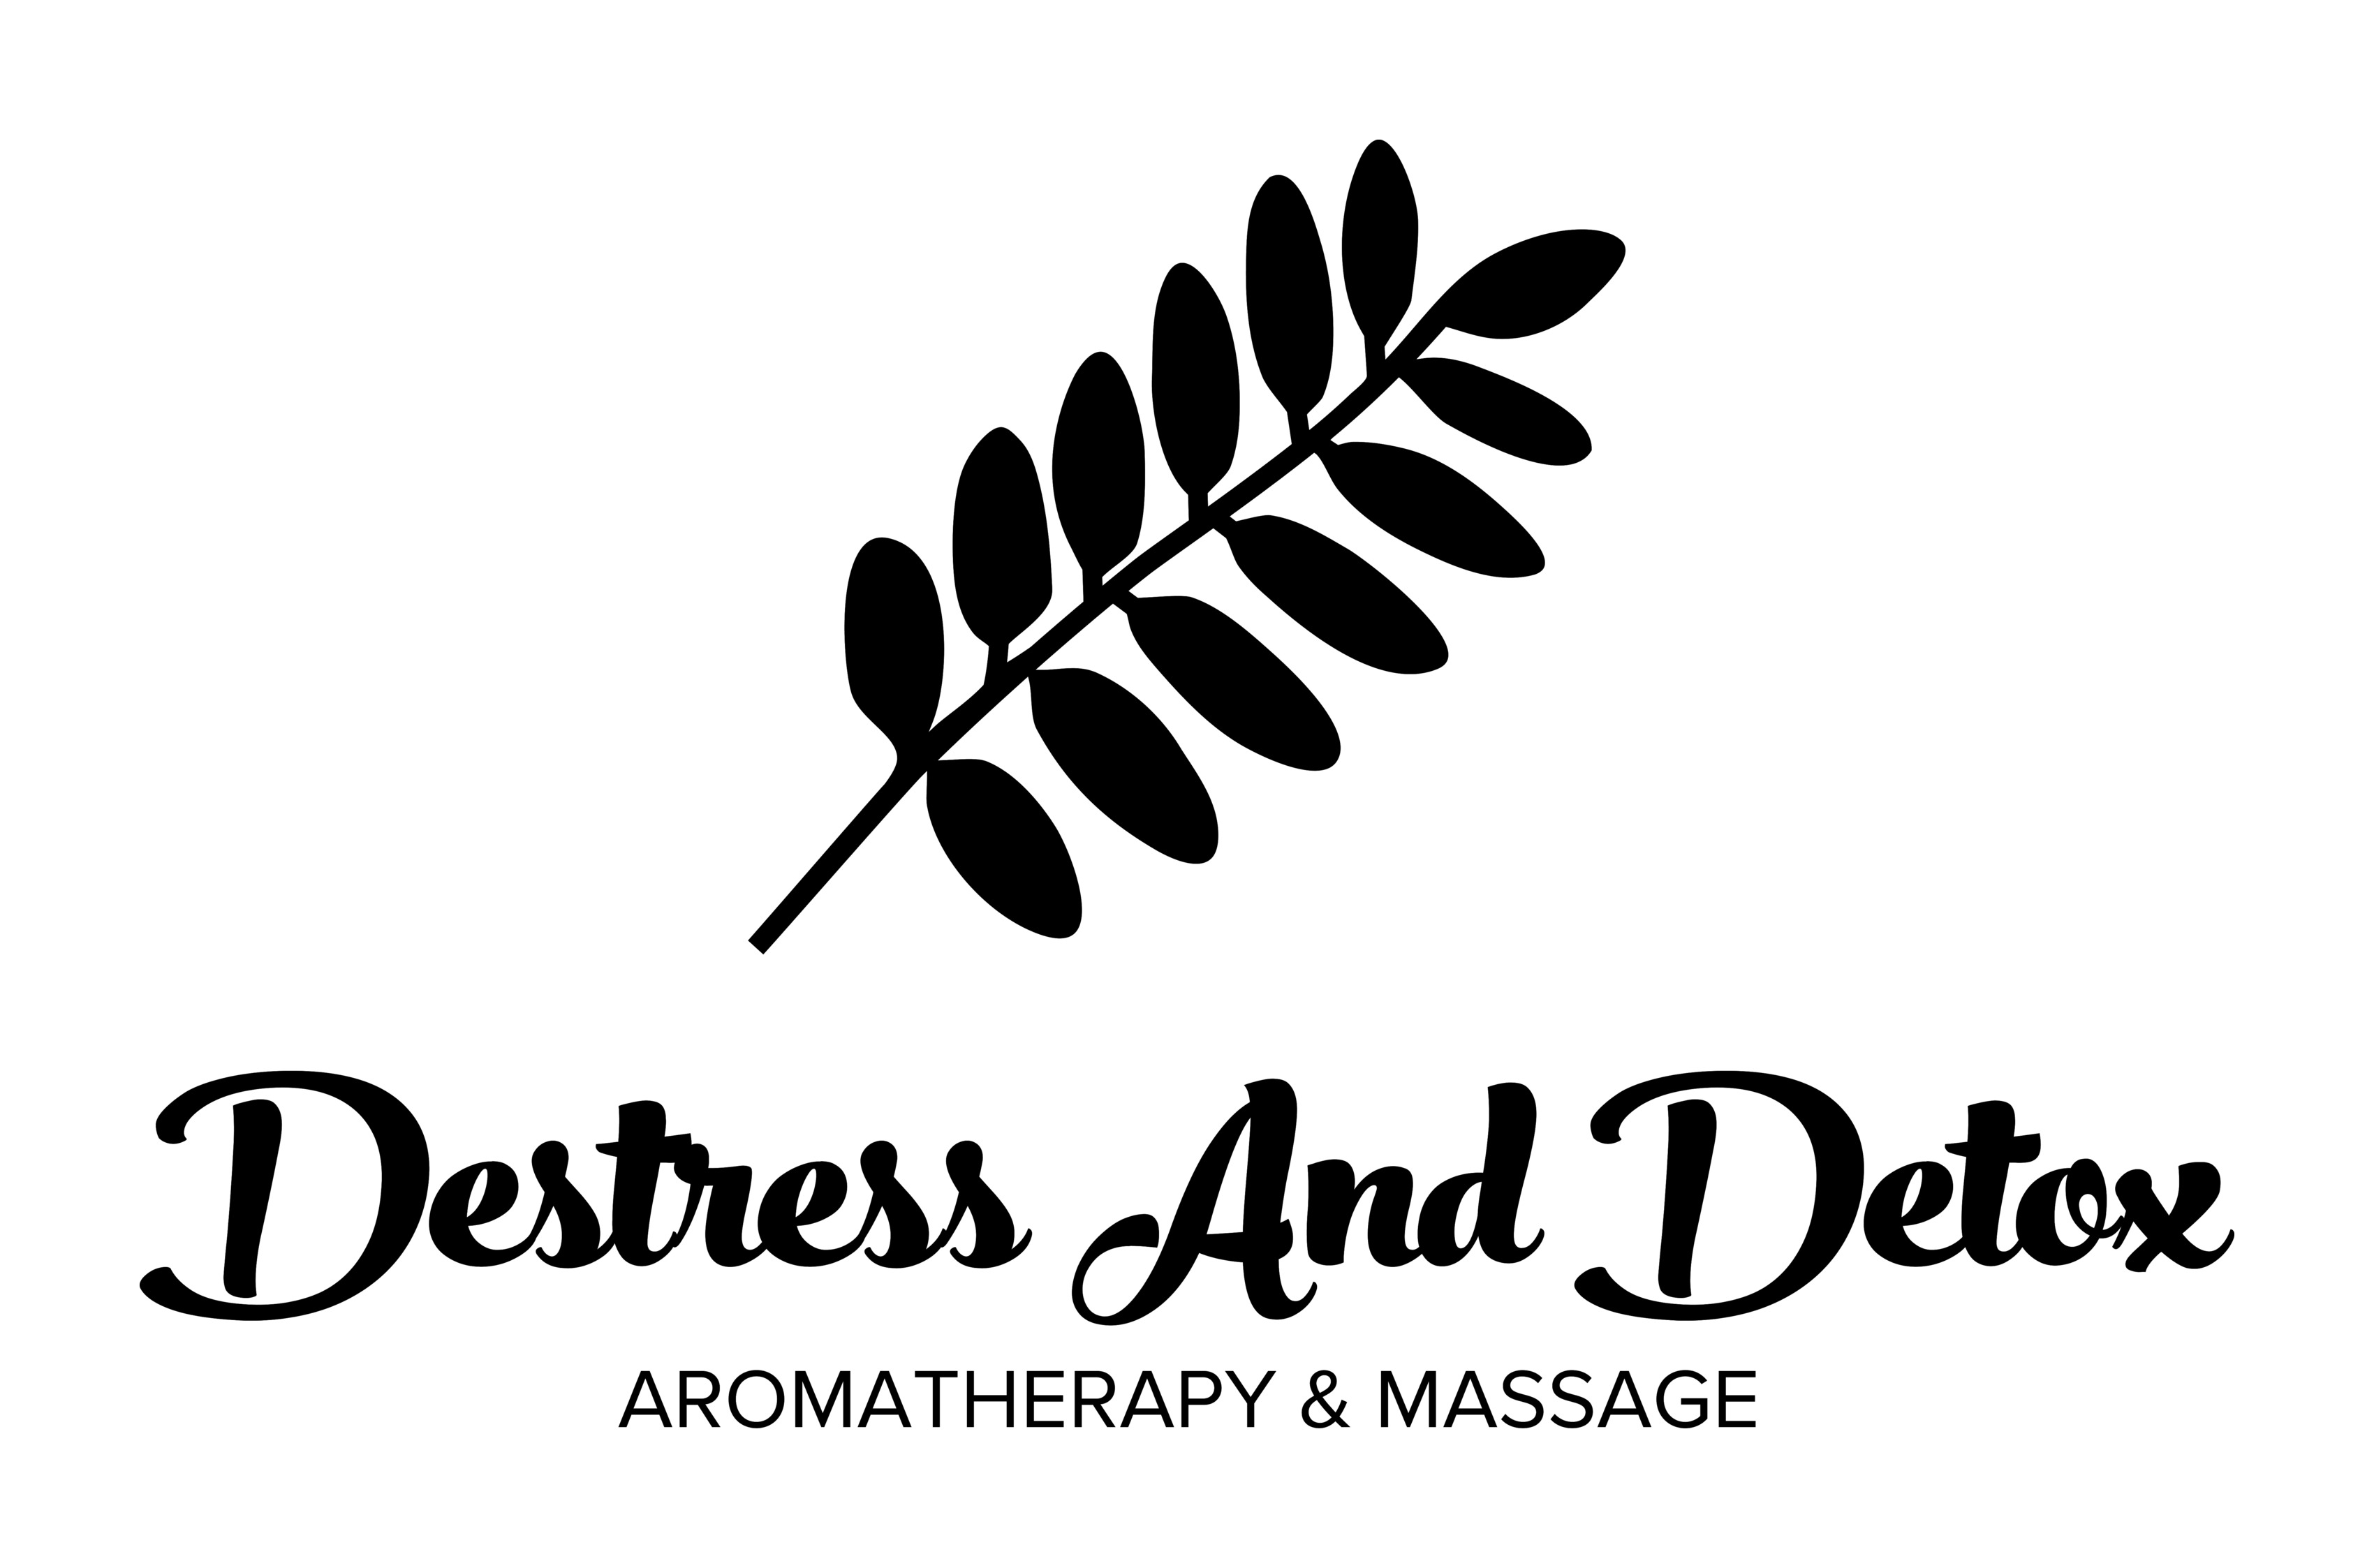 DeStress And Detox